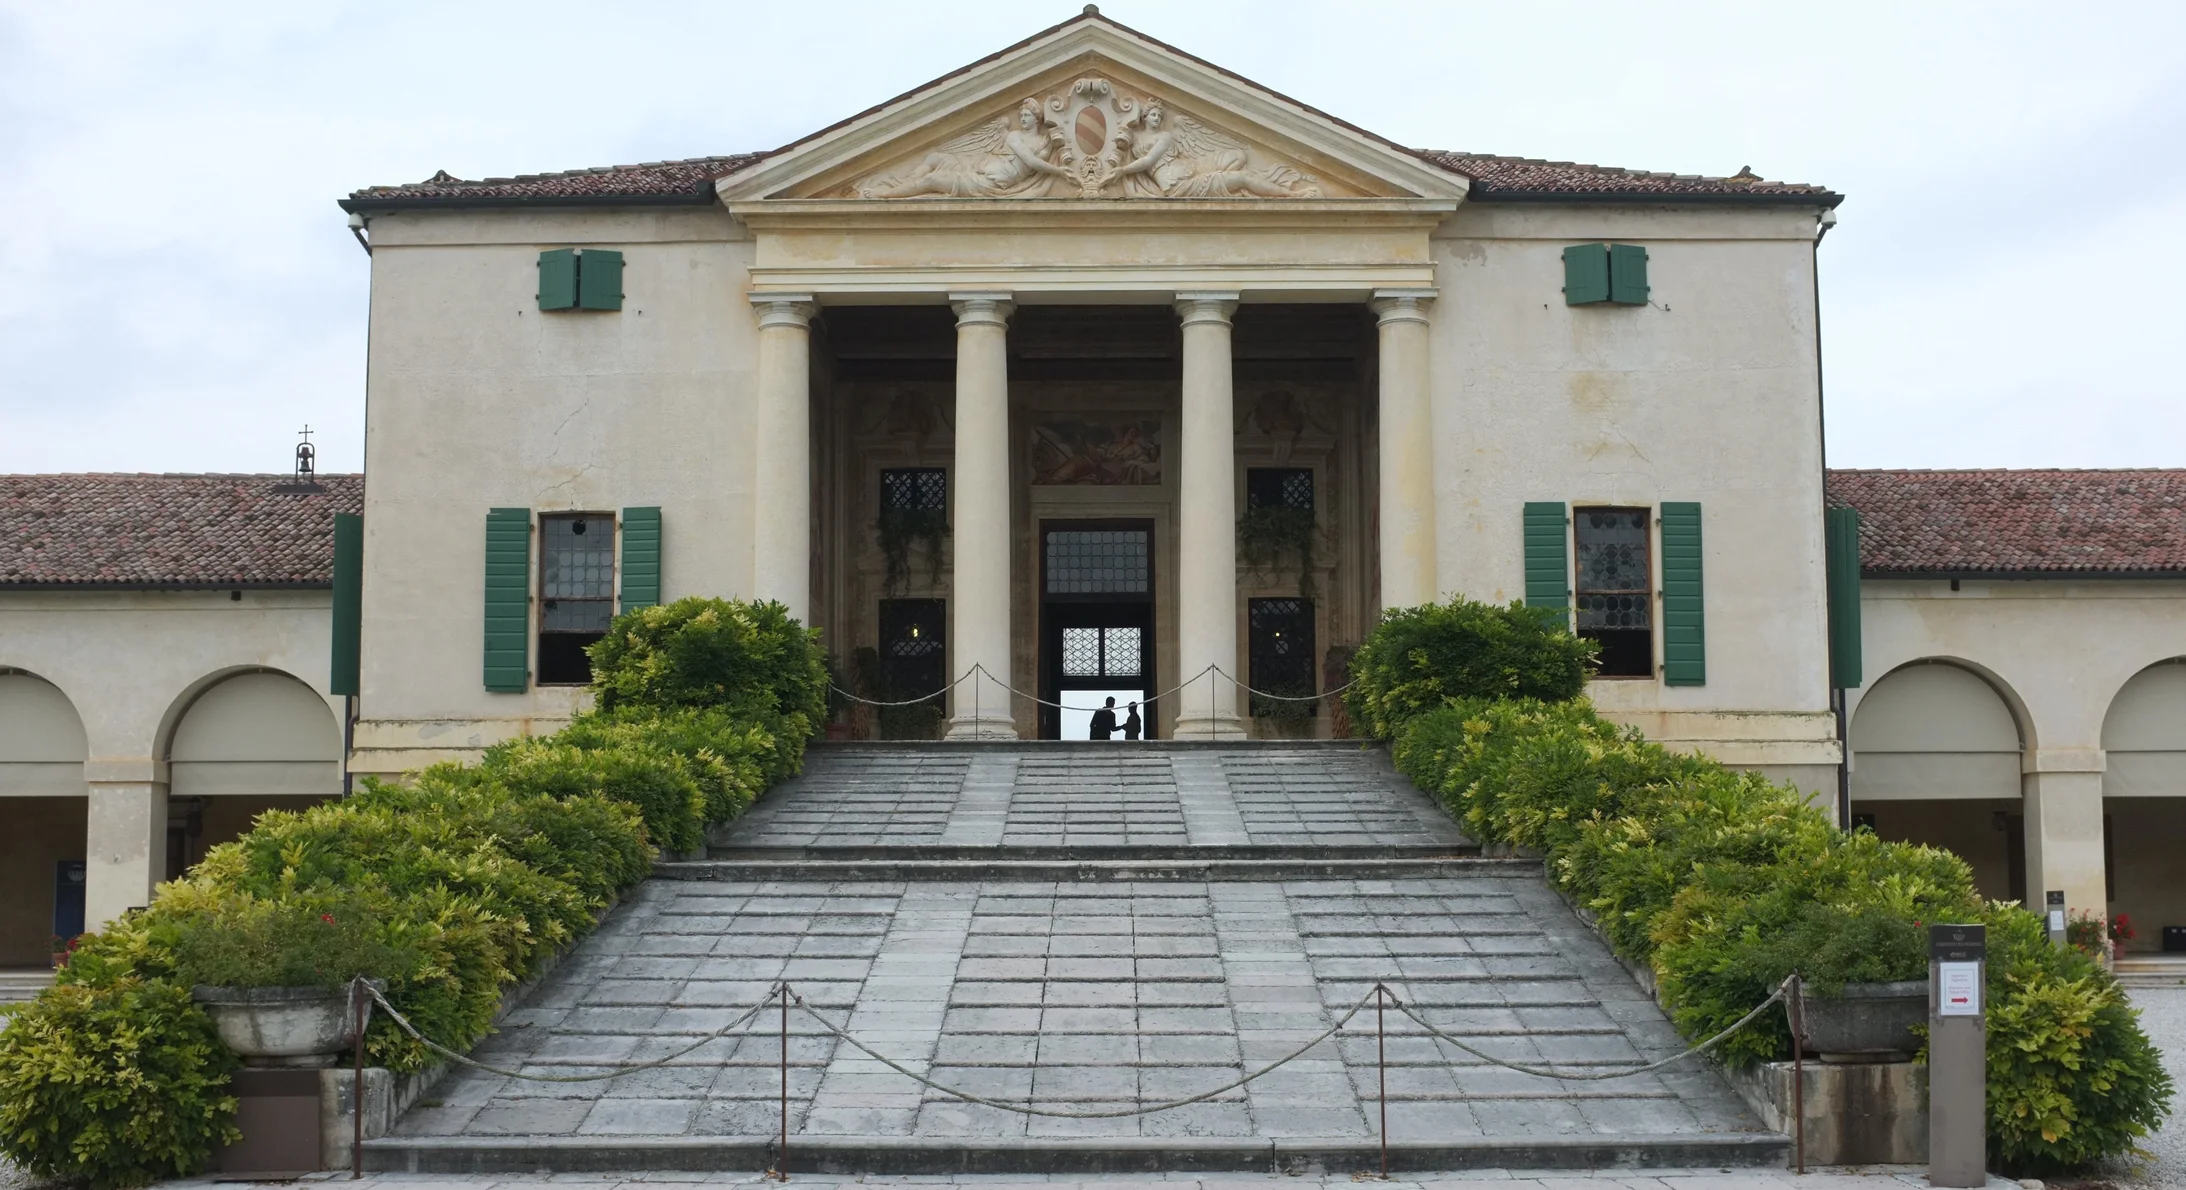 Villa Emo in Fanzolo die Vedelago, gebaut von Andrea Palladio, vor 1556 (Foto: Journal 21)